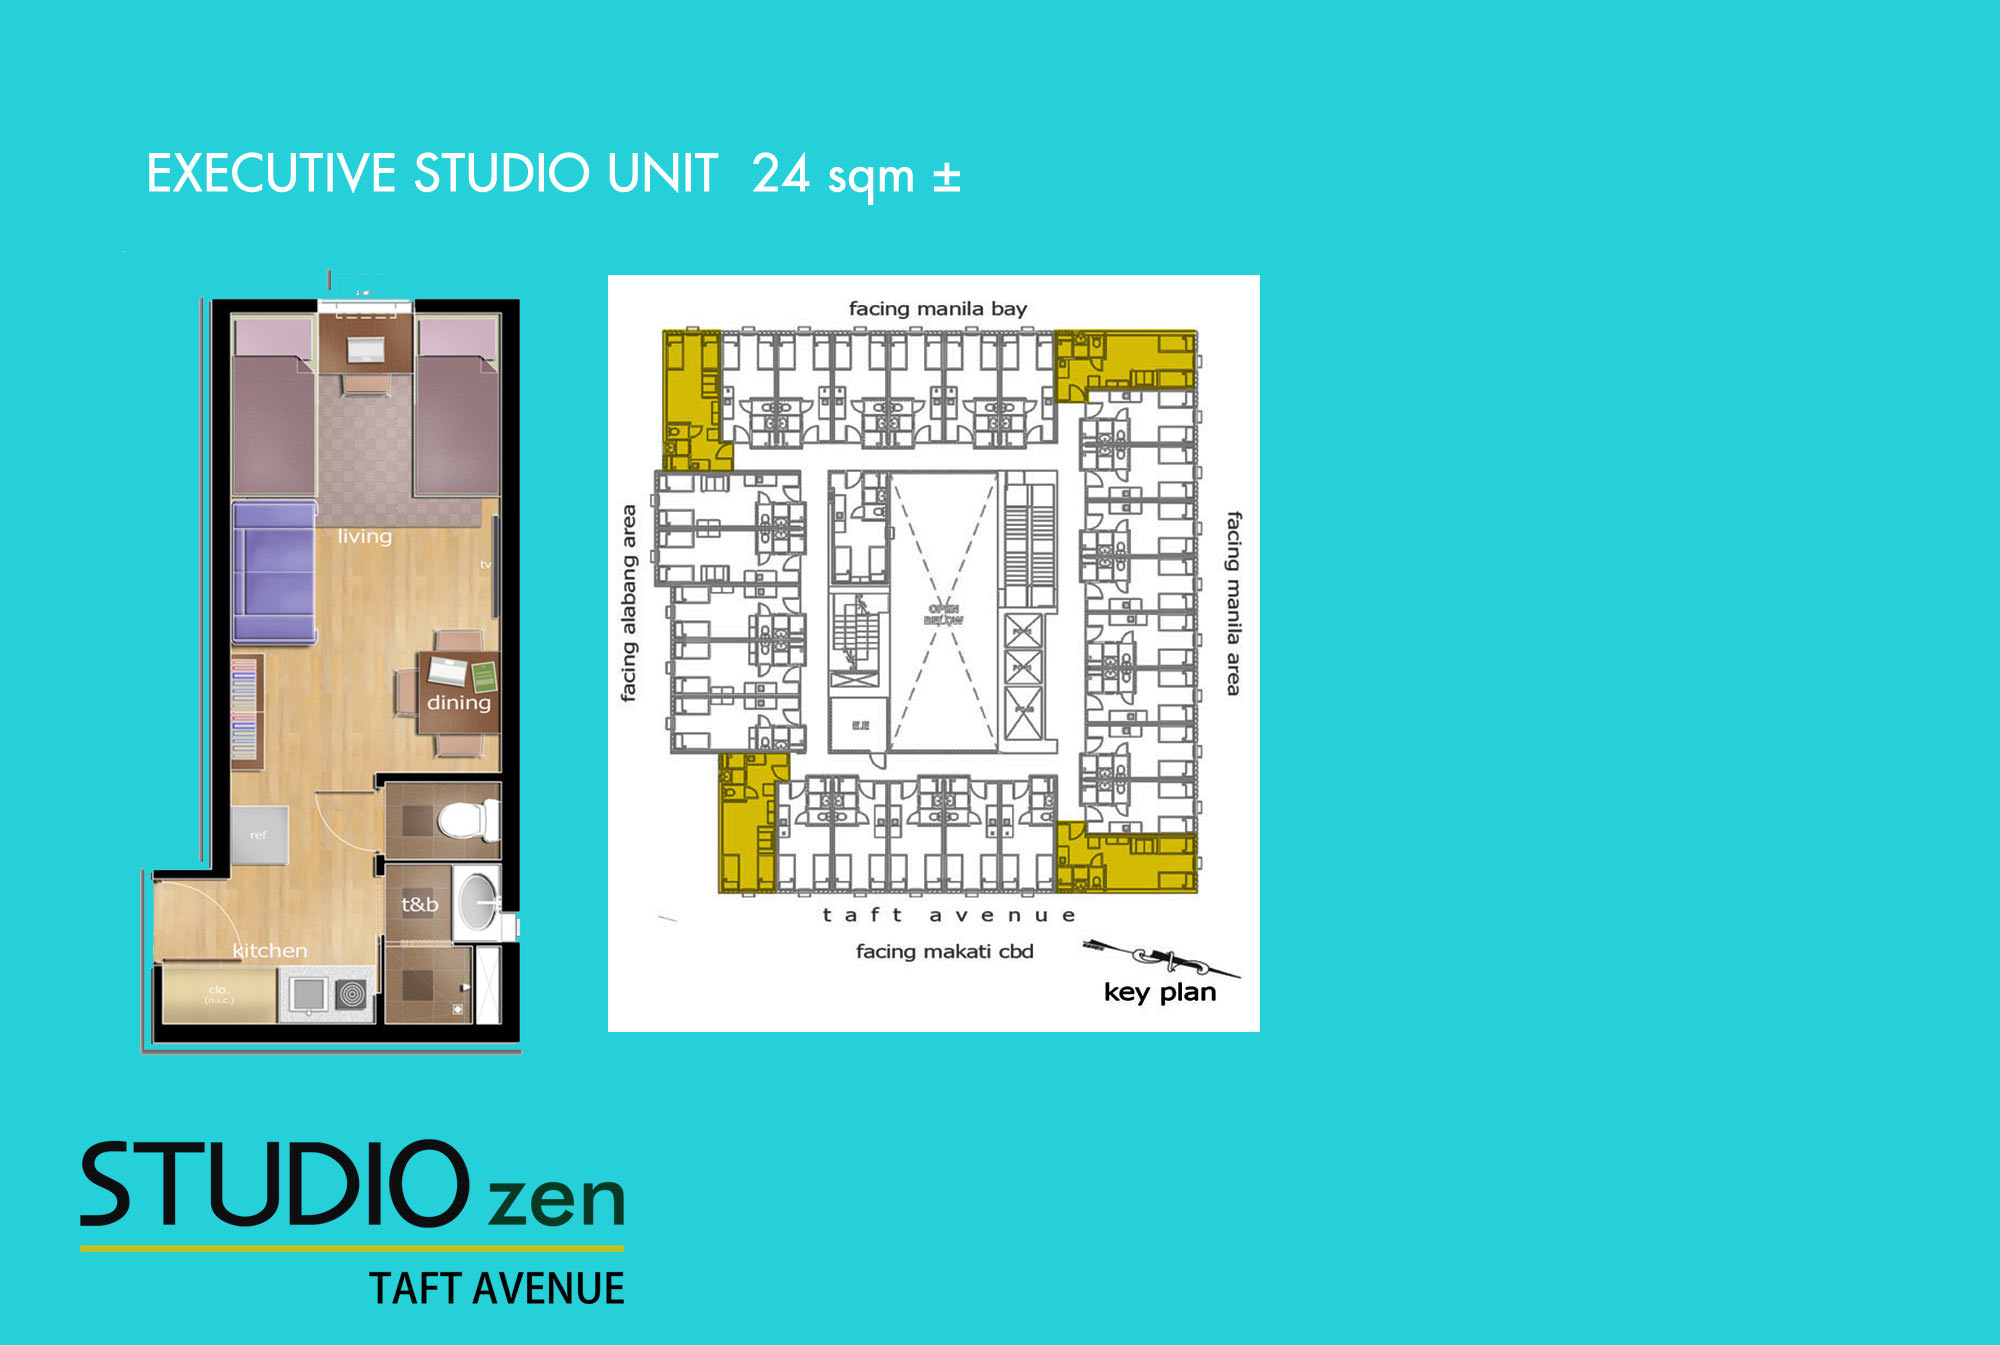 Studio Zen - Executive Studio Unit Layout